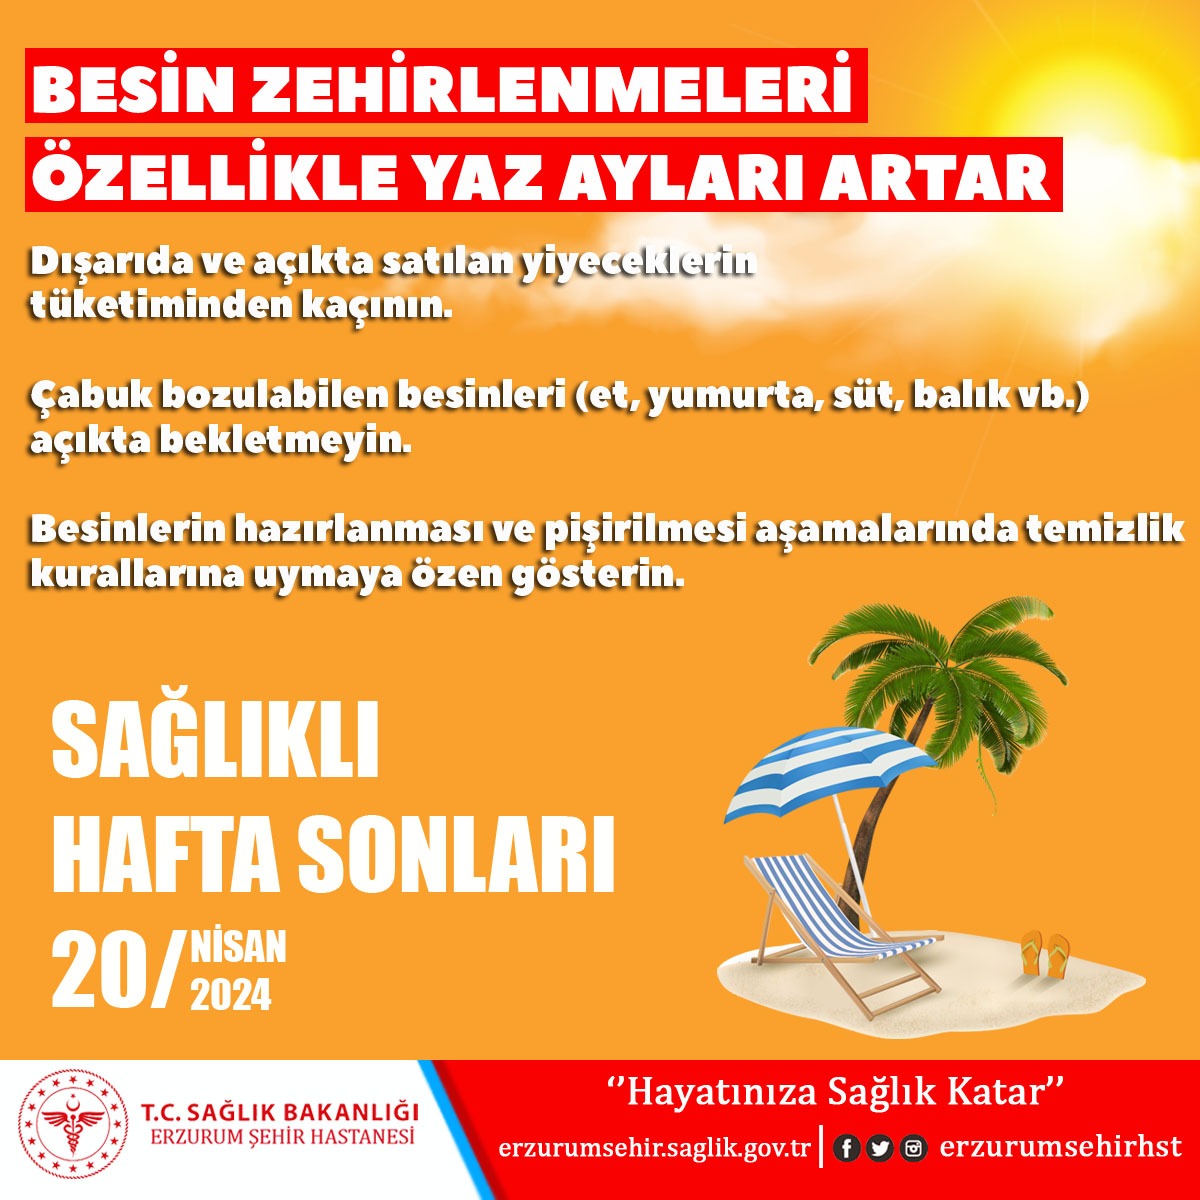 Sağlıklı Hafta Sonları 
#erzurumşehirhastanesi
@dribrahimhakkitor 
#besinzehirlenmesi 
#yaz
#yazmevsimi